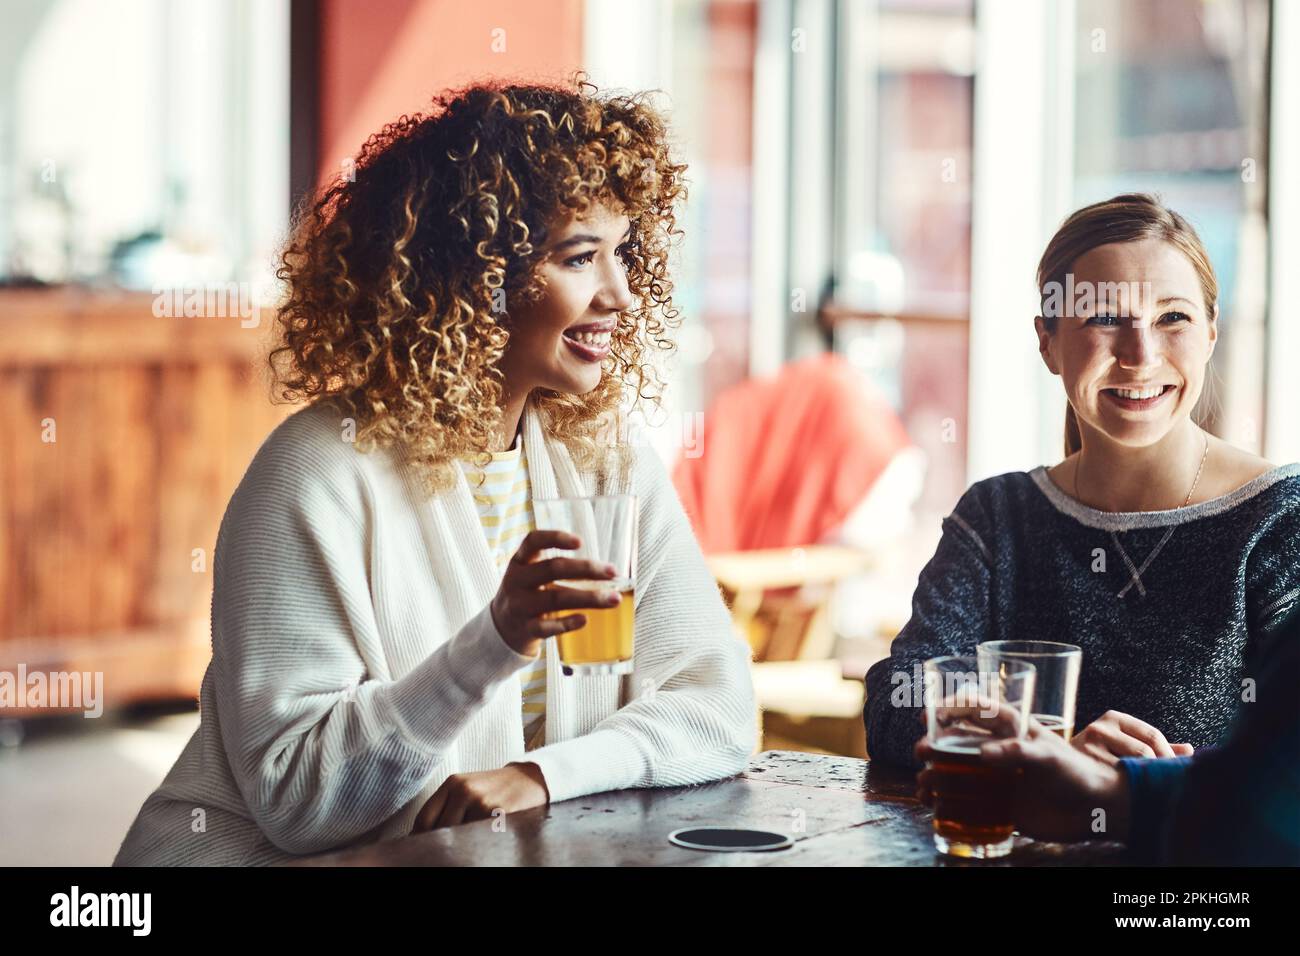 Sorridere, è il fine settimana. gli amici si gustano delle birre in un bar. Foto Stock